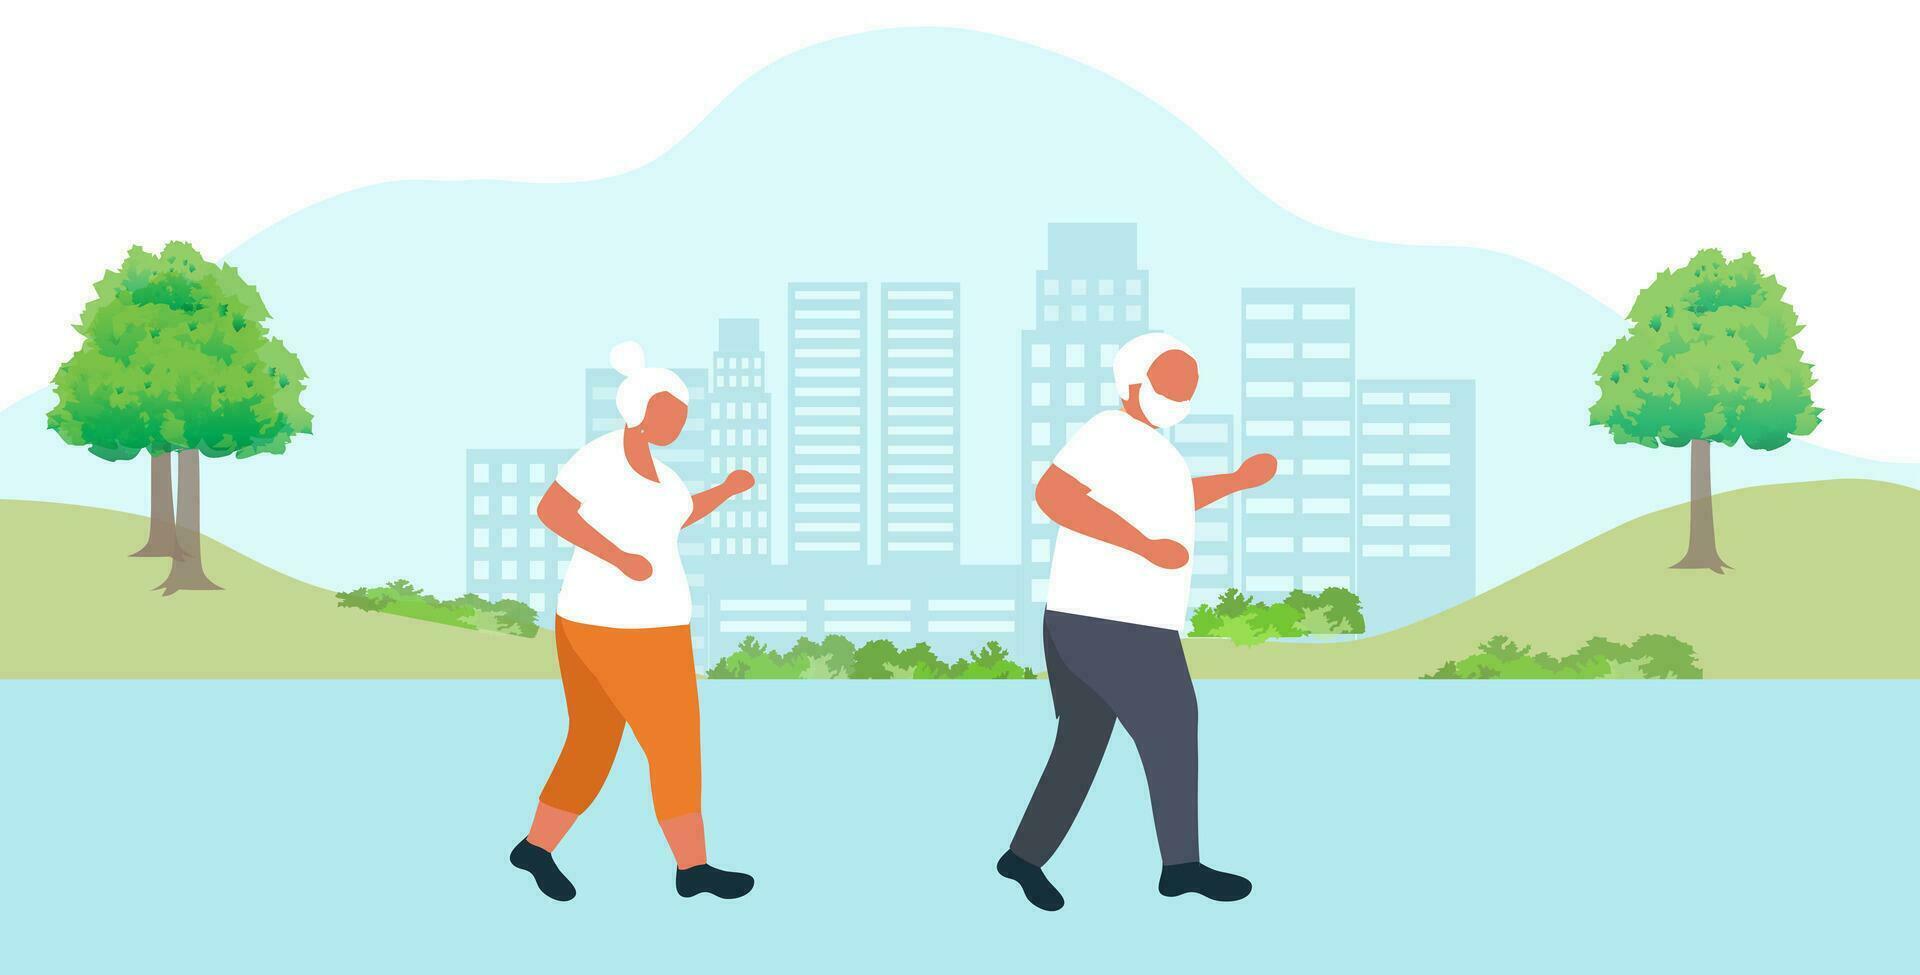 äldre par joggning övning i parkera vektor illustration. äldre människor friska livsstil, friska åldring för senior vård begrepp